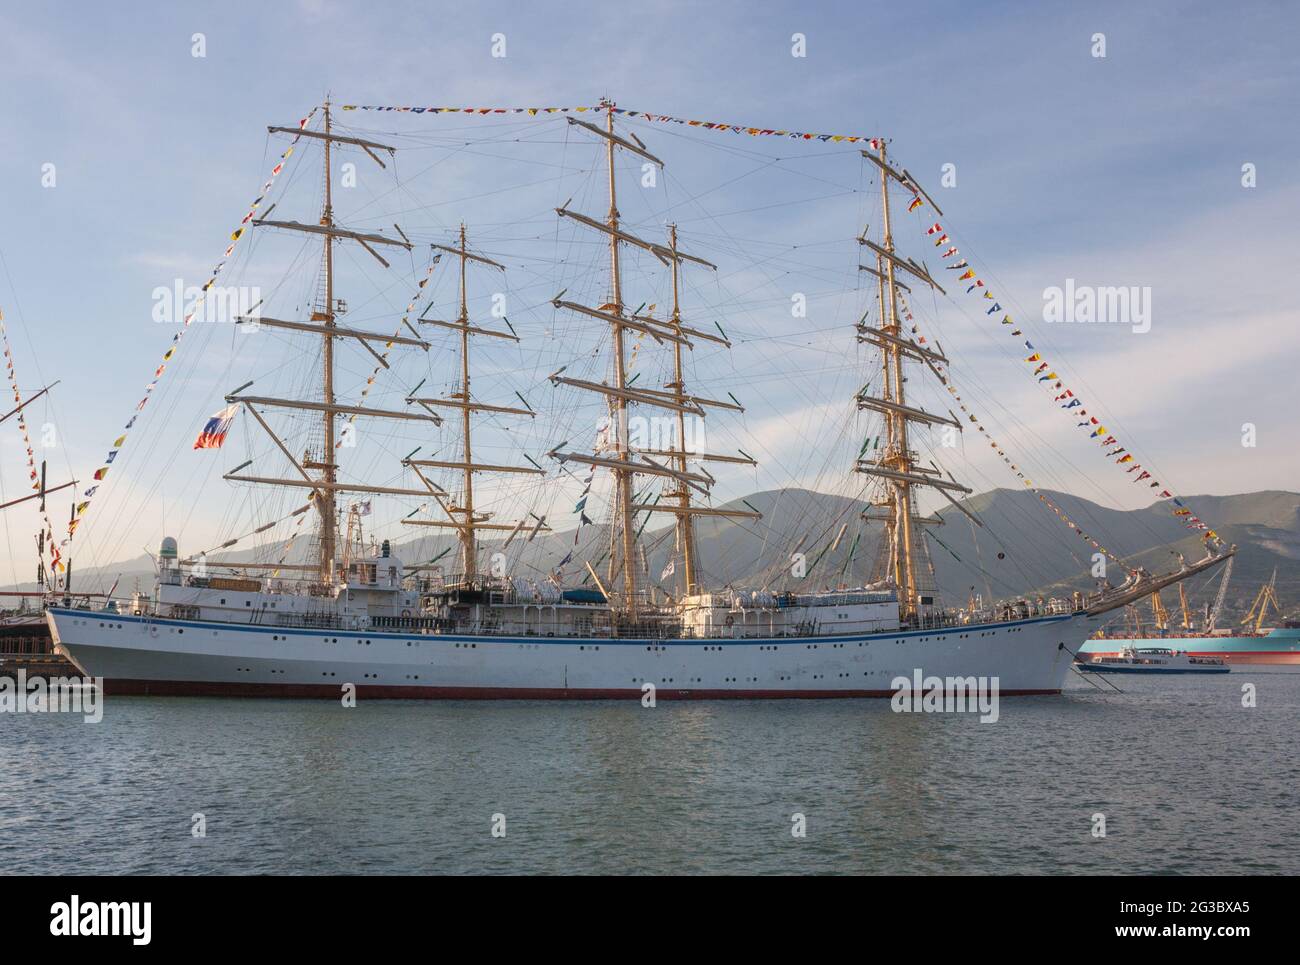 Großes Segelschiff mit drei Masten Stockfotografie - Alamy